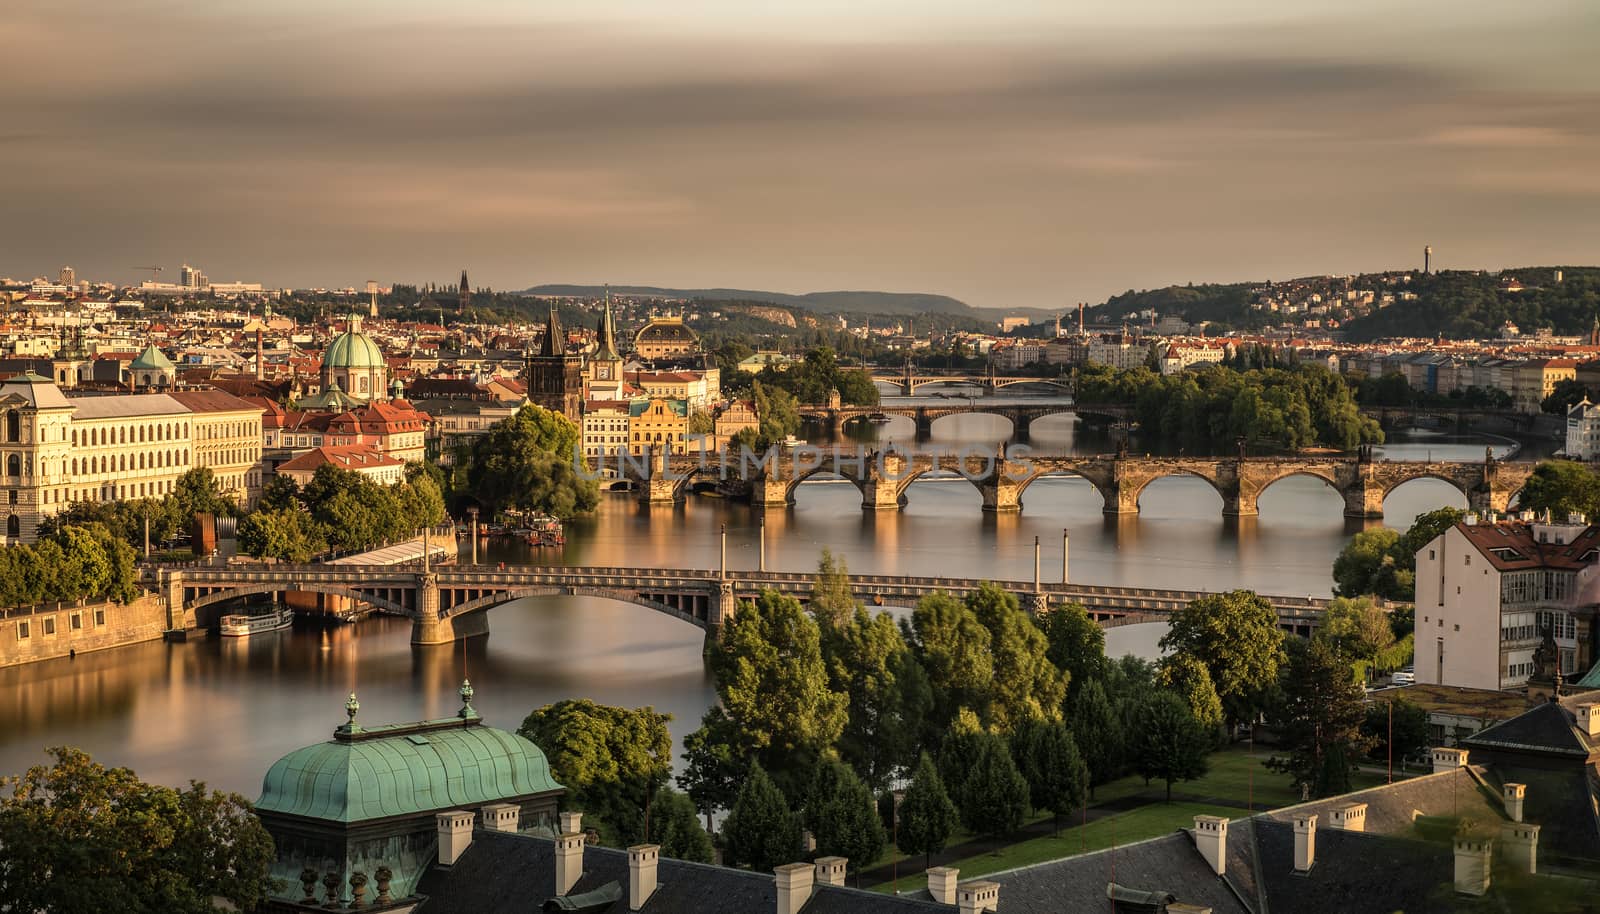 Old bridges of Prague by nickfox